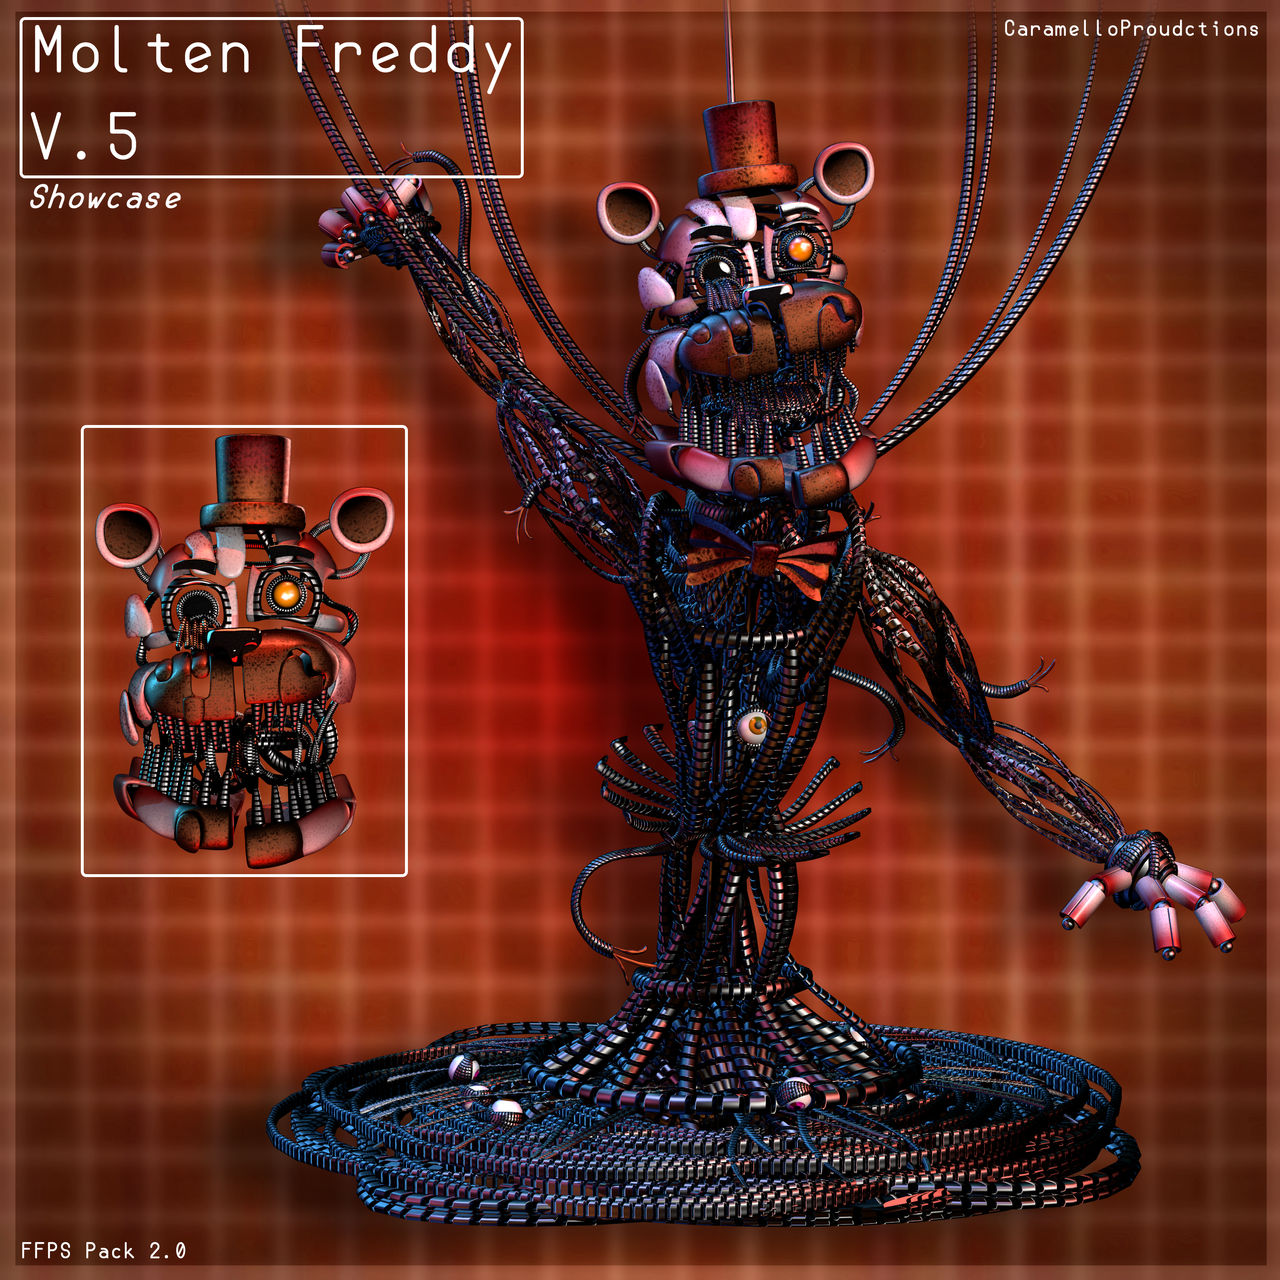 Molten Freddy by e74444444444 on DeviantArt